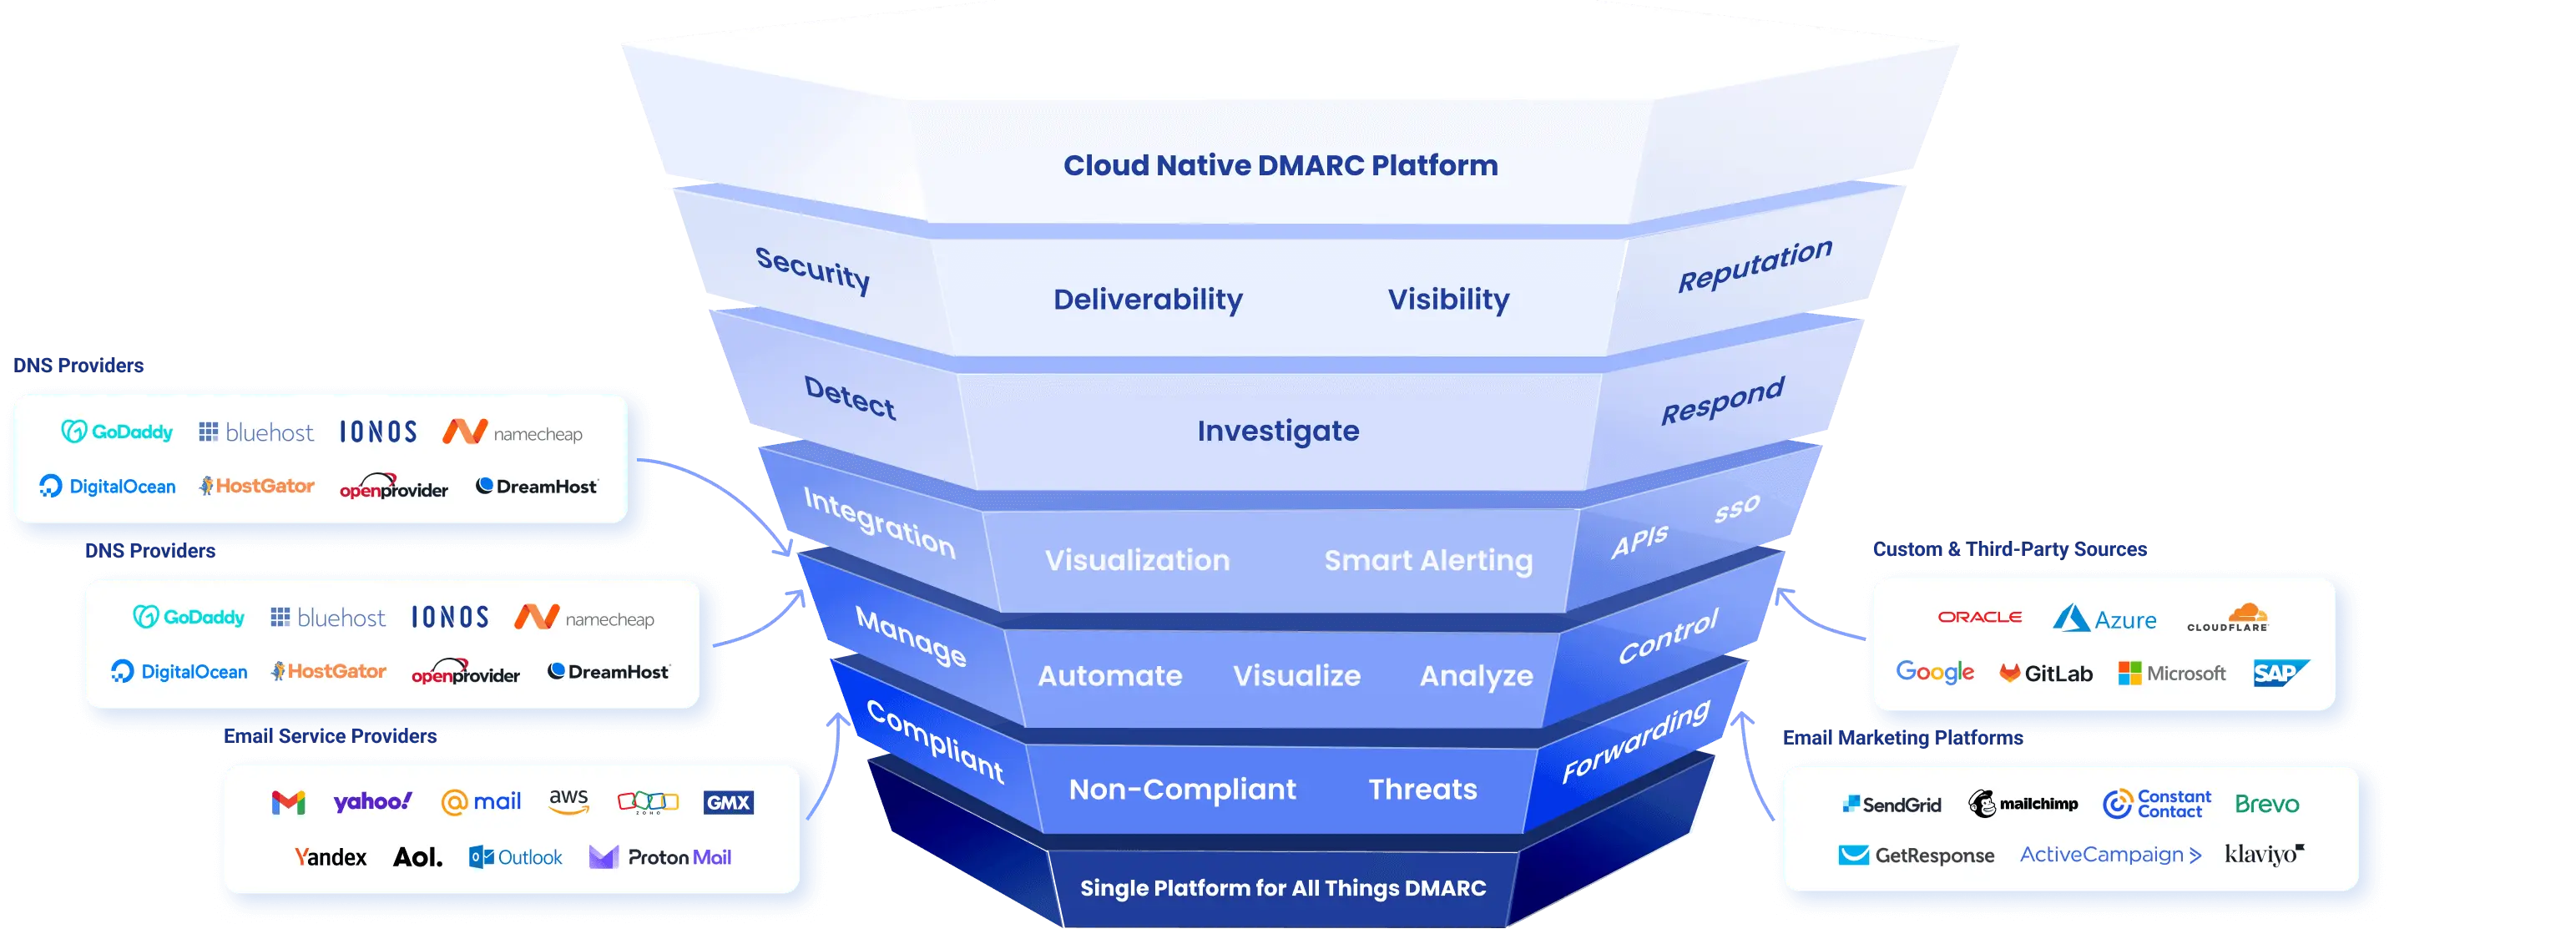 Cloud Native Dmarc Platform